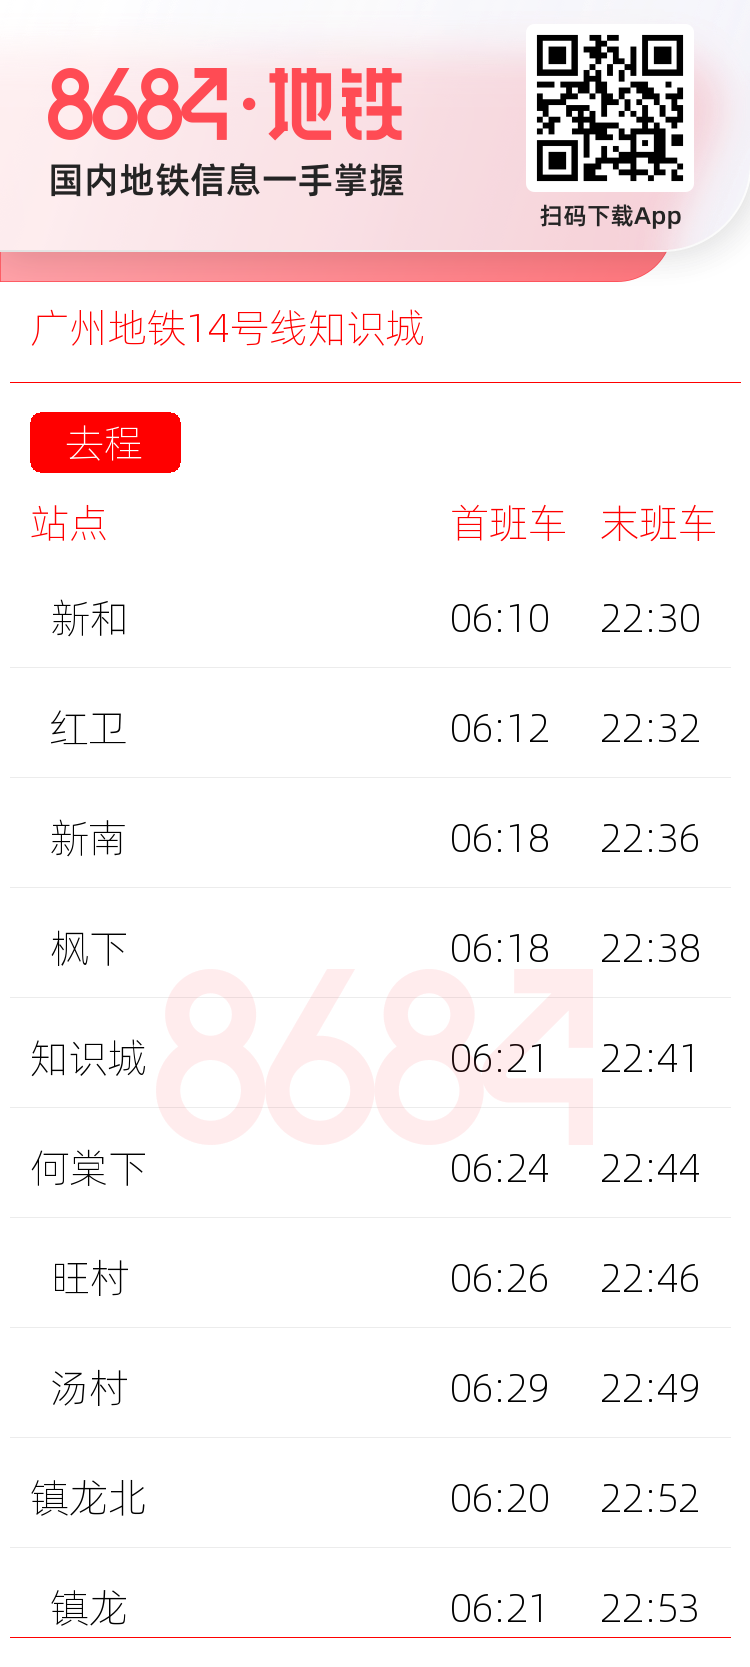 广州地铁14号线知识城运营时间表